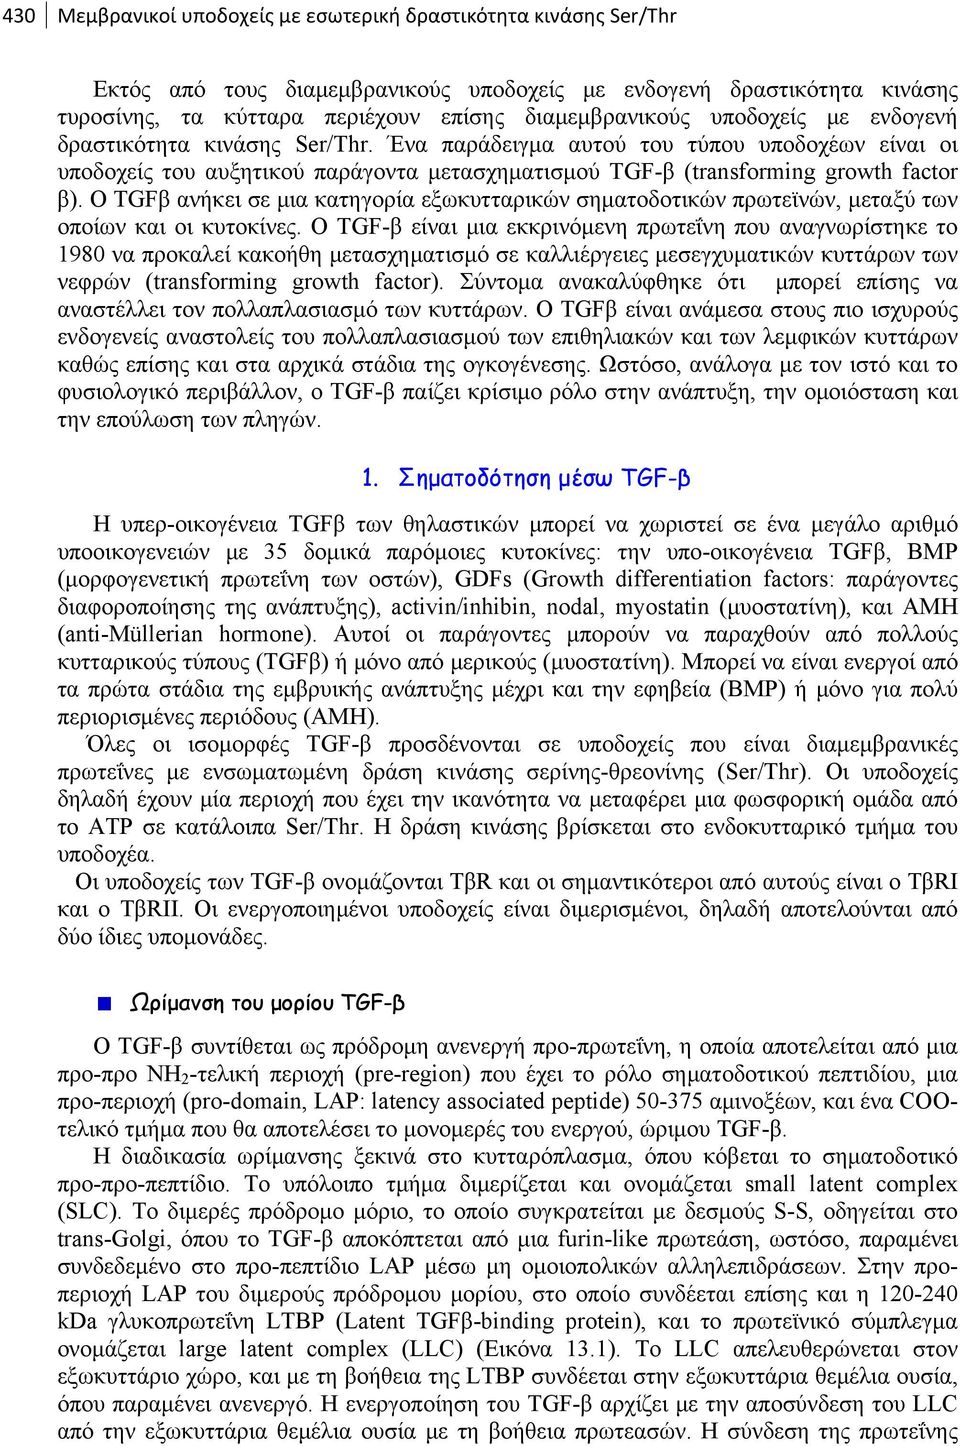 Ο TGFβ ανήκει σε μια κατηγορία εξωκυτταρικών σηματοδοτικών πρωτεϊνών, μεταξύ των οποίων και οι κυτοκίνες.